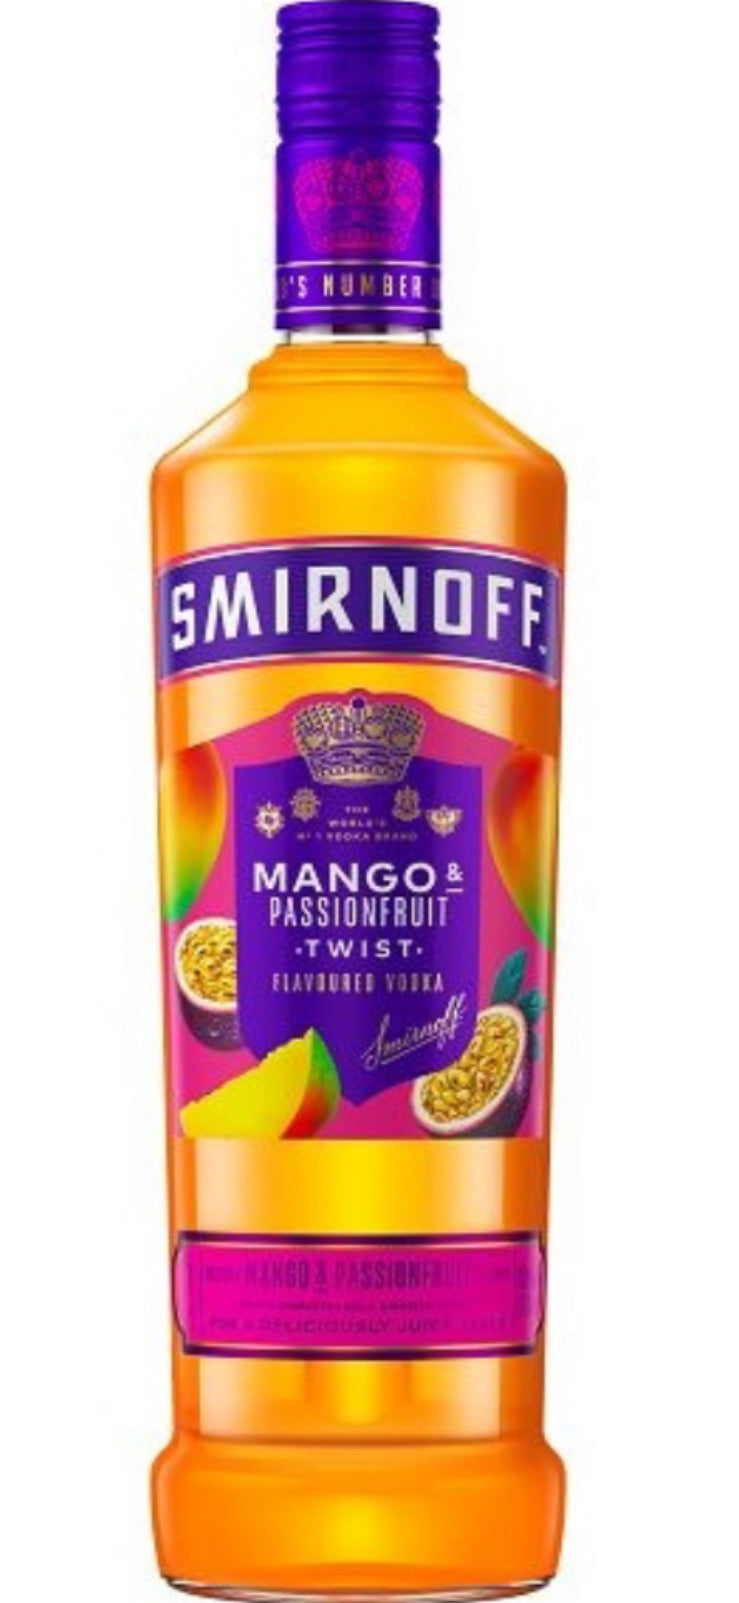 Smirnoff Mango & Passionfruit Twist Flavoured Vodka 37.5% - Price Marked Bottles